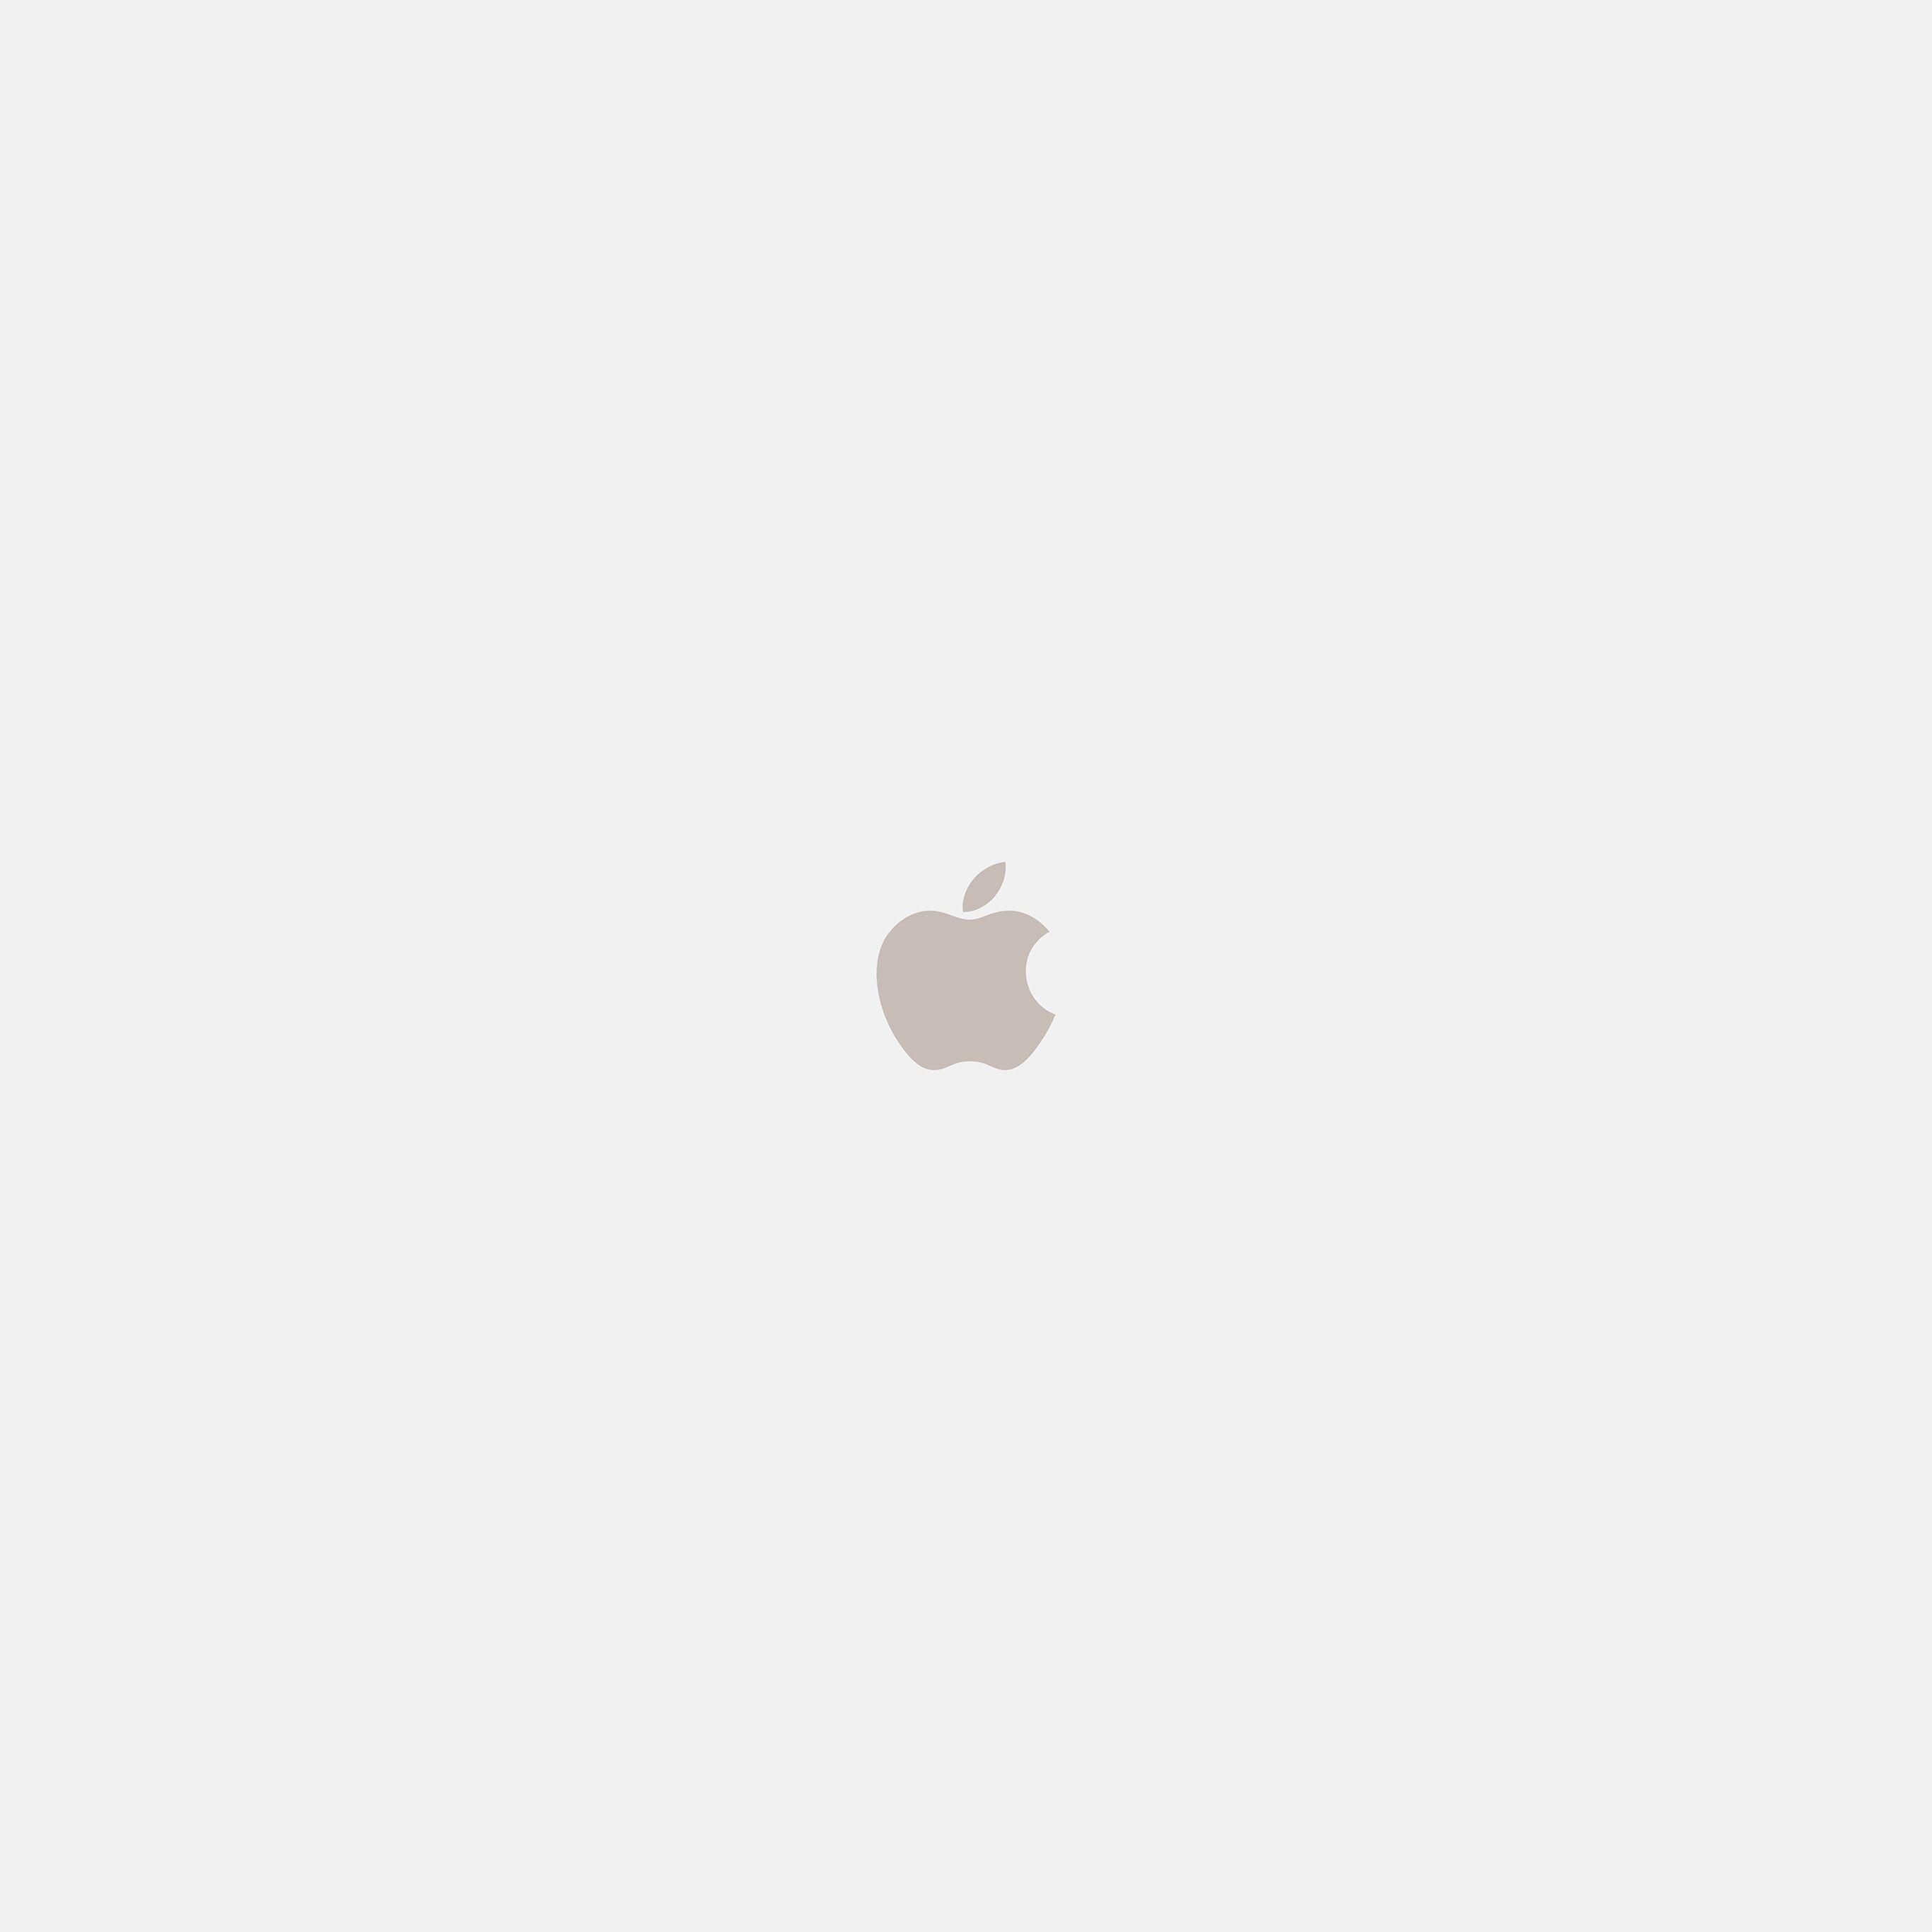 White Apple Logo - I Love Papers. iphone7 apple logo white gold art illustration